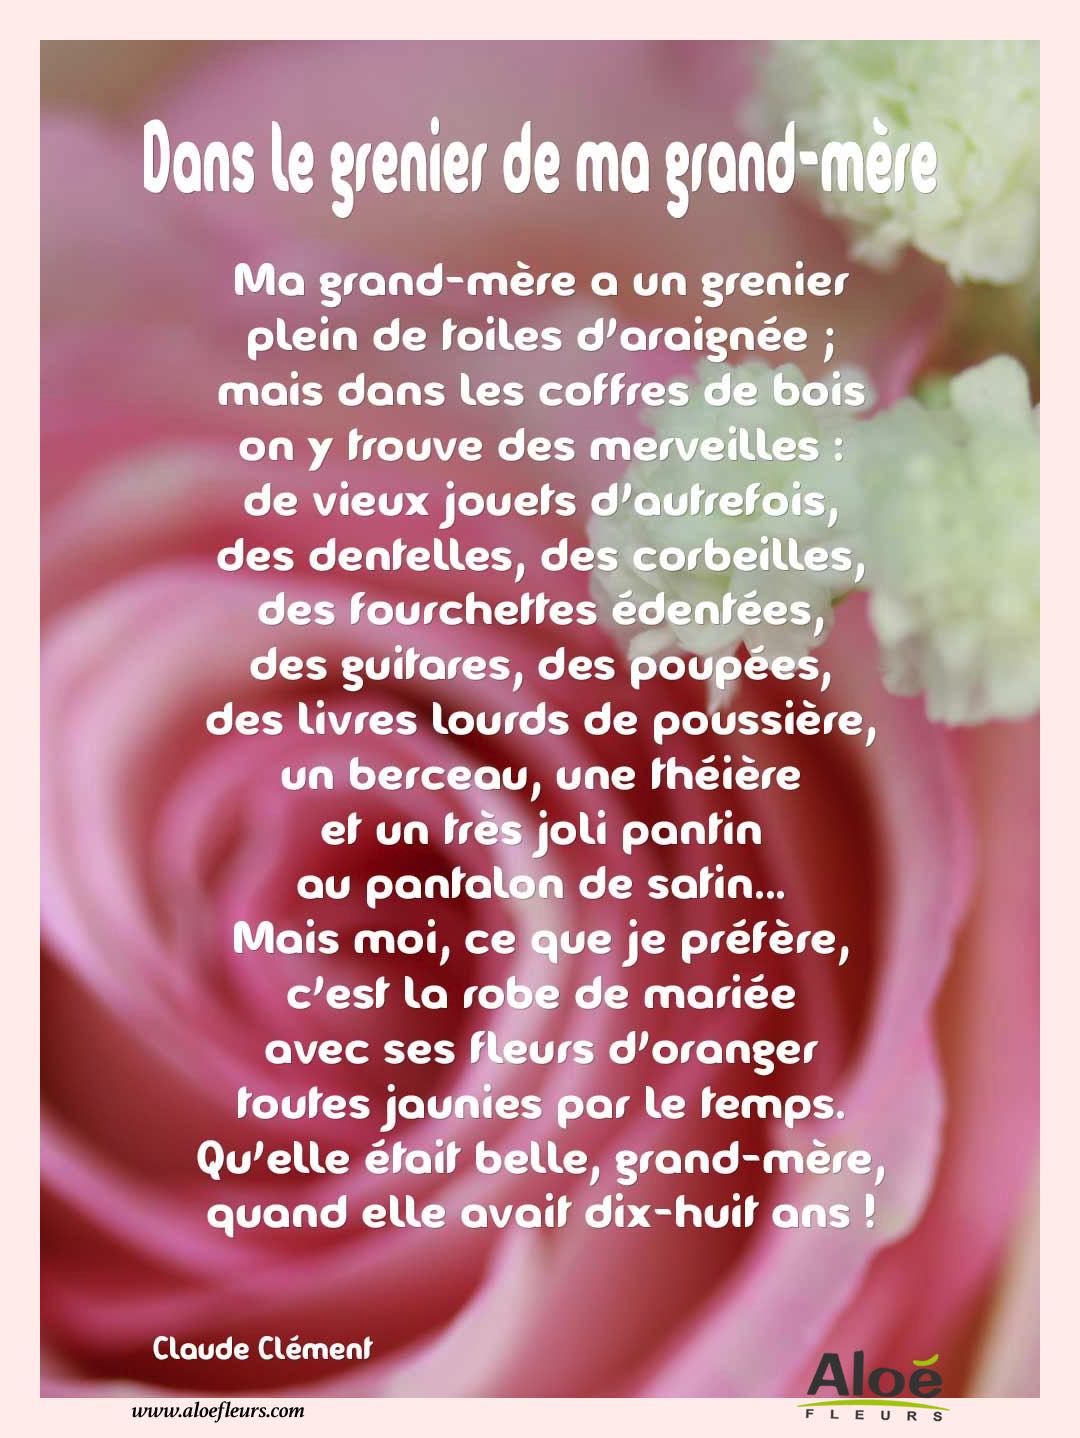 Poemes Fete Des Grands Meres 2016 Aloefleurs.com   Dans Le Grenier De Ma Grand Mère